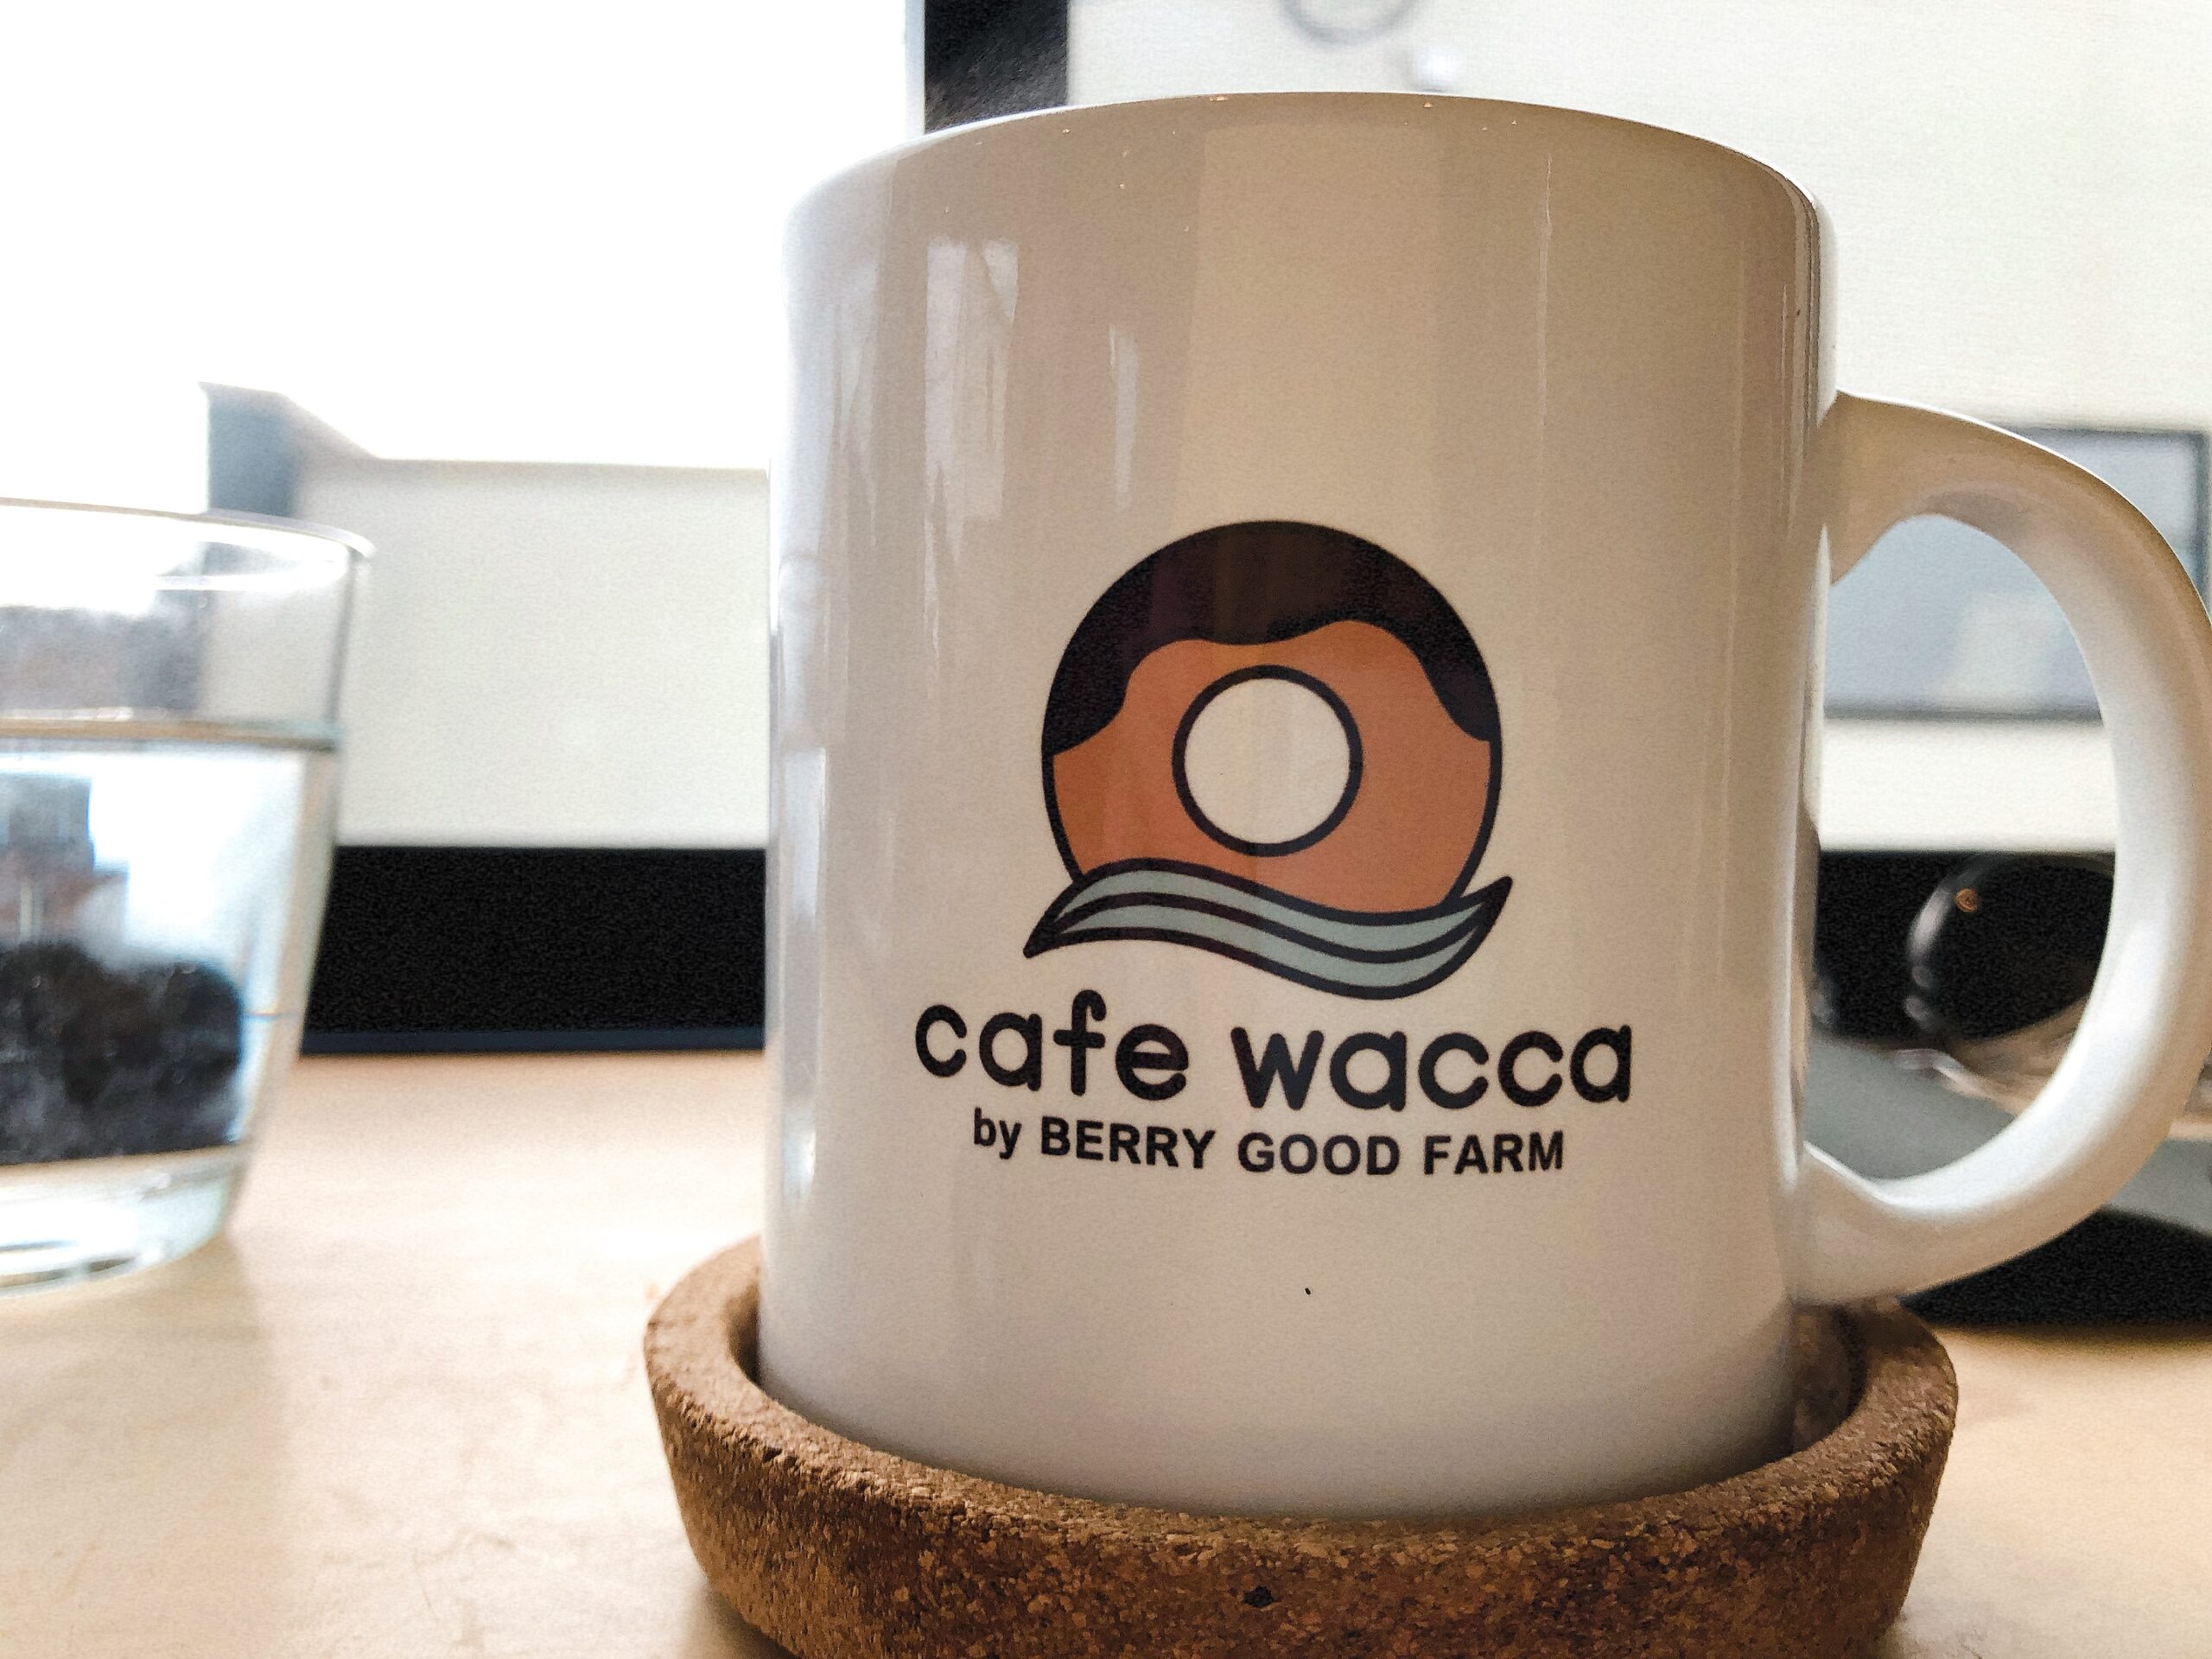 cafe wacca